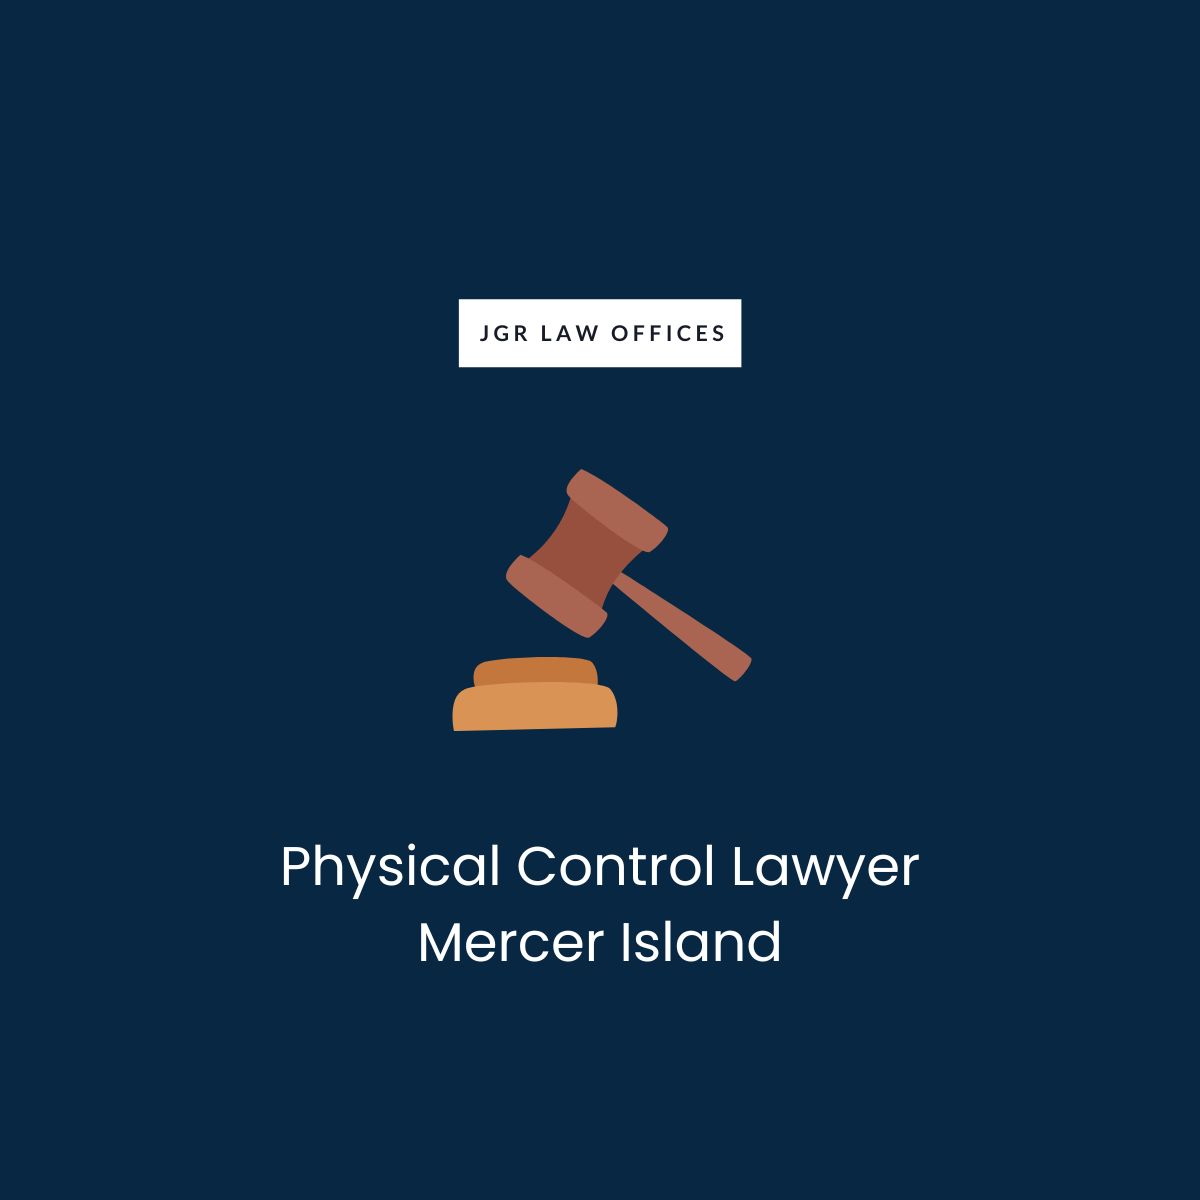 Physical Control Attorney Mercer Island Physical Control Physical Control